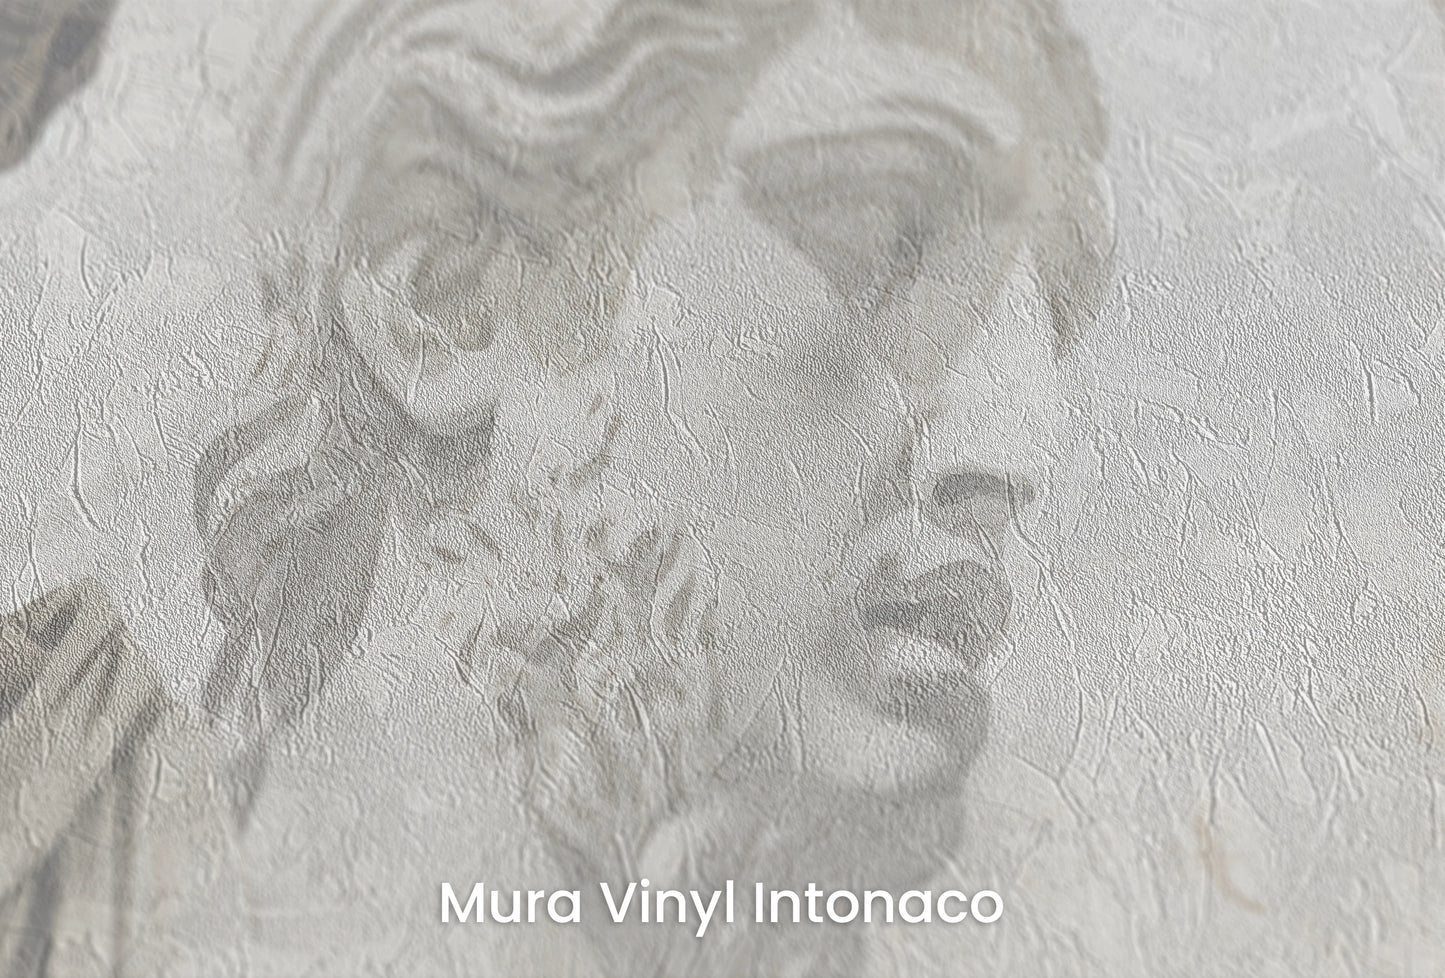 Zbliżenie na artystyczną fototapetę o nazwie Apollo's Contemplation na podłożu Mura Vinyl Intonaco - struktura tartego tynku.